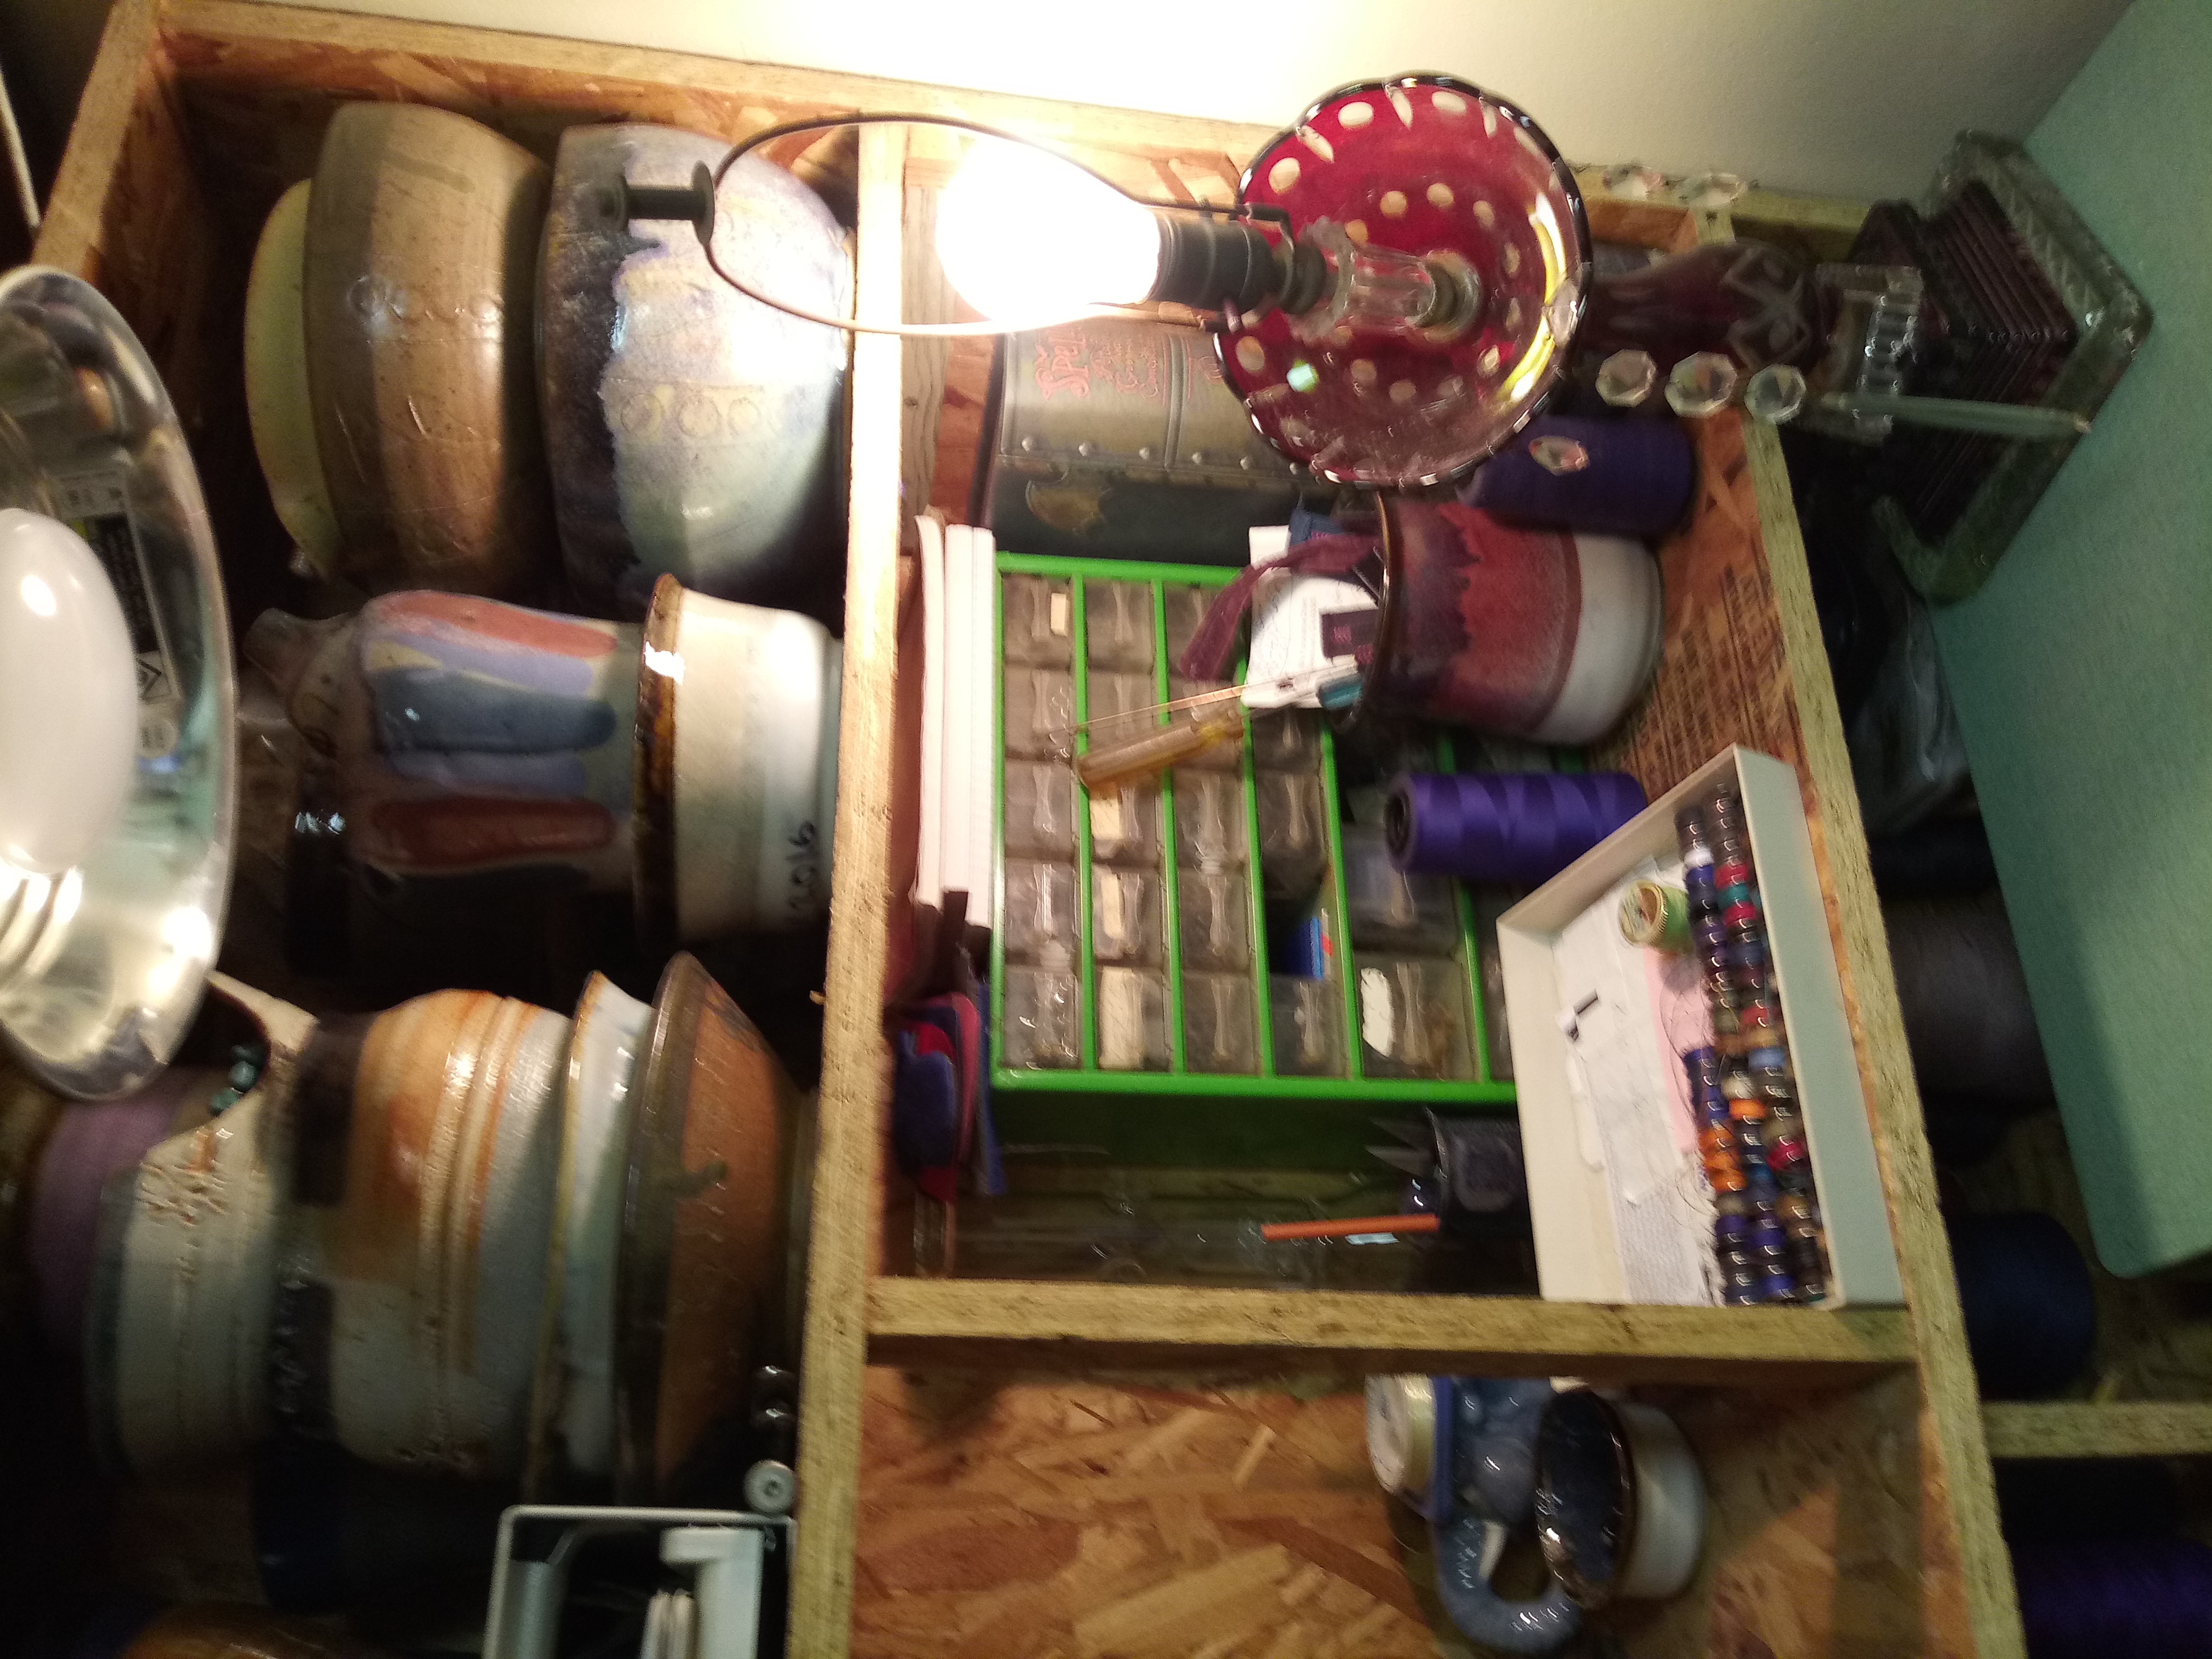 Organized bobbins on shelf with pottery